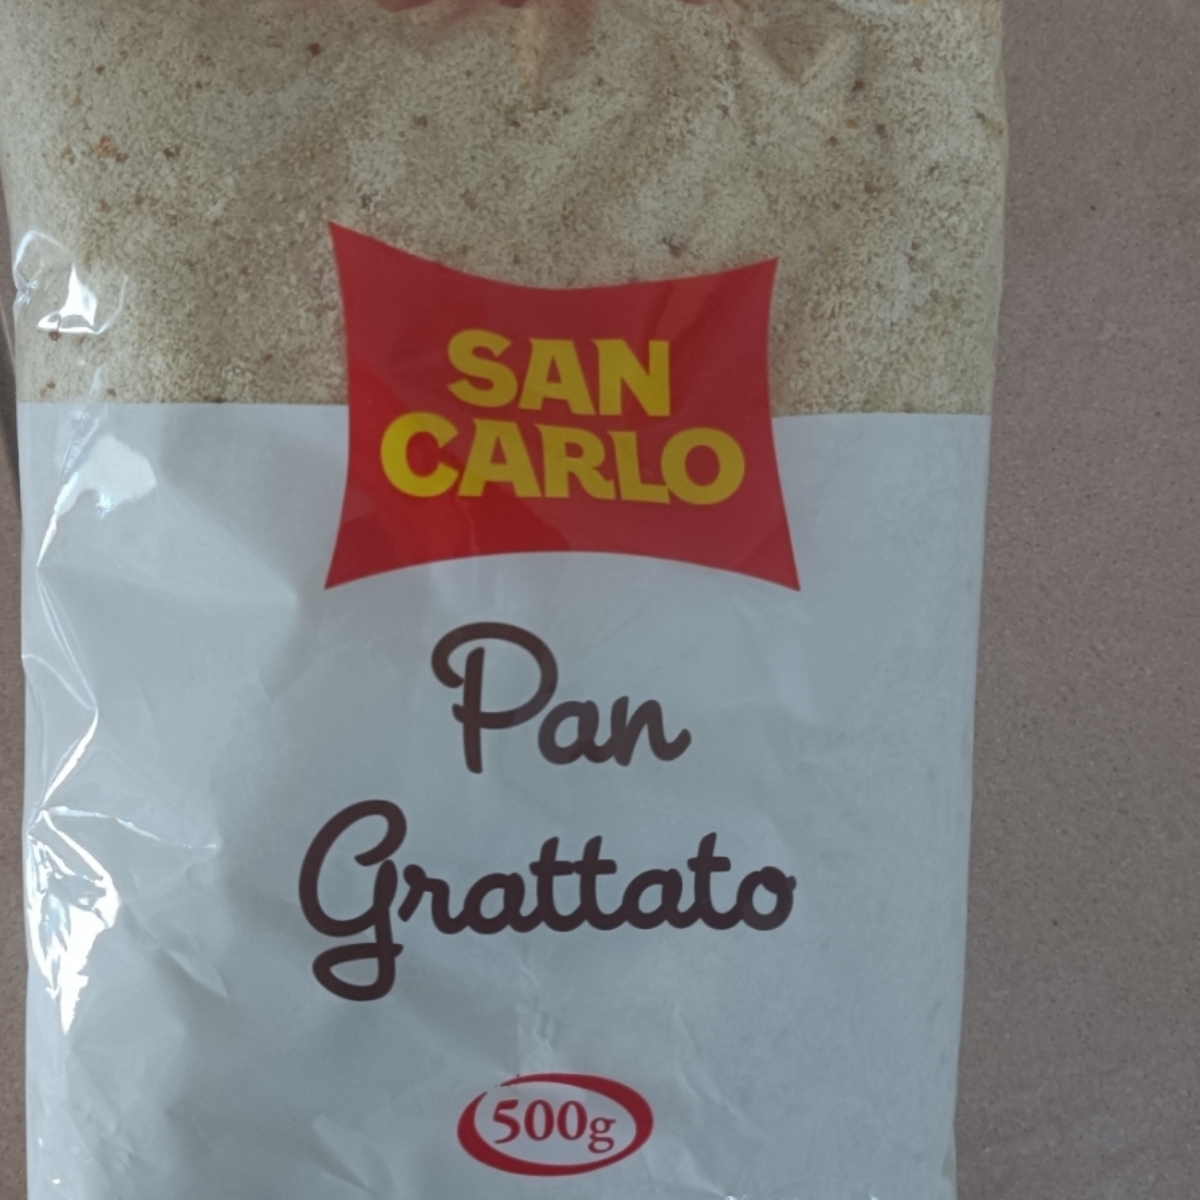 San Carlo pan grattato Reviews